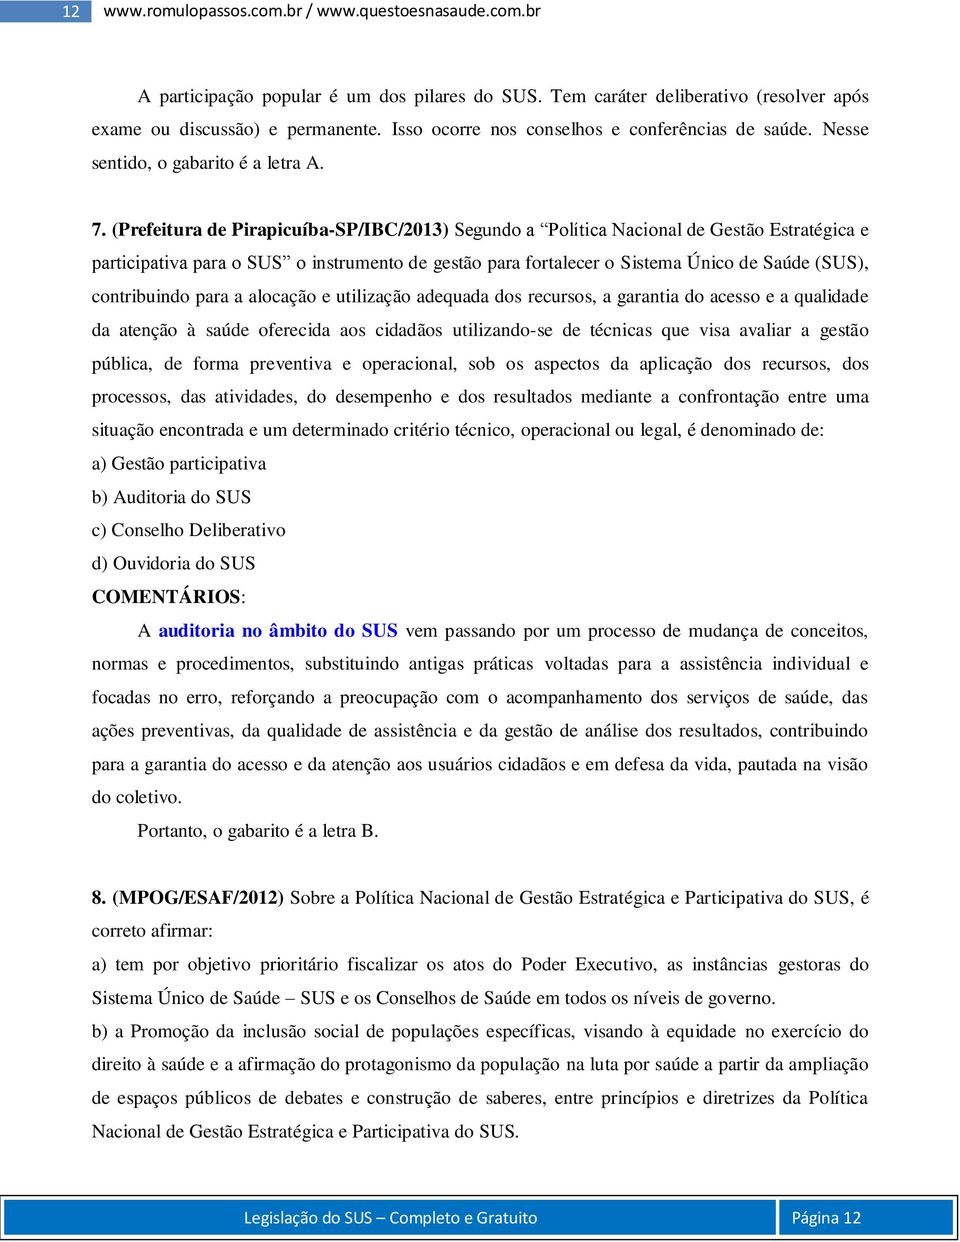 (Prefeitura de Pirapicuíba-SP/IBC/2013) Segundo a Política Nacional de Gestão Estratégica e participativa para o SUS o instrumento de gestão para fortalecer o Sistema Único de Saúde (SUS),